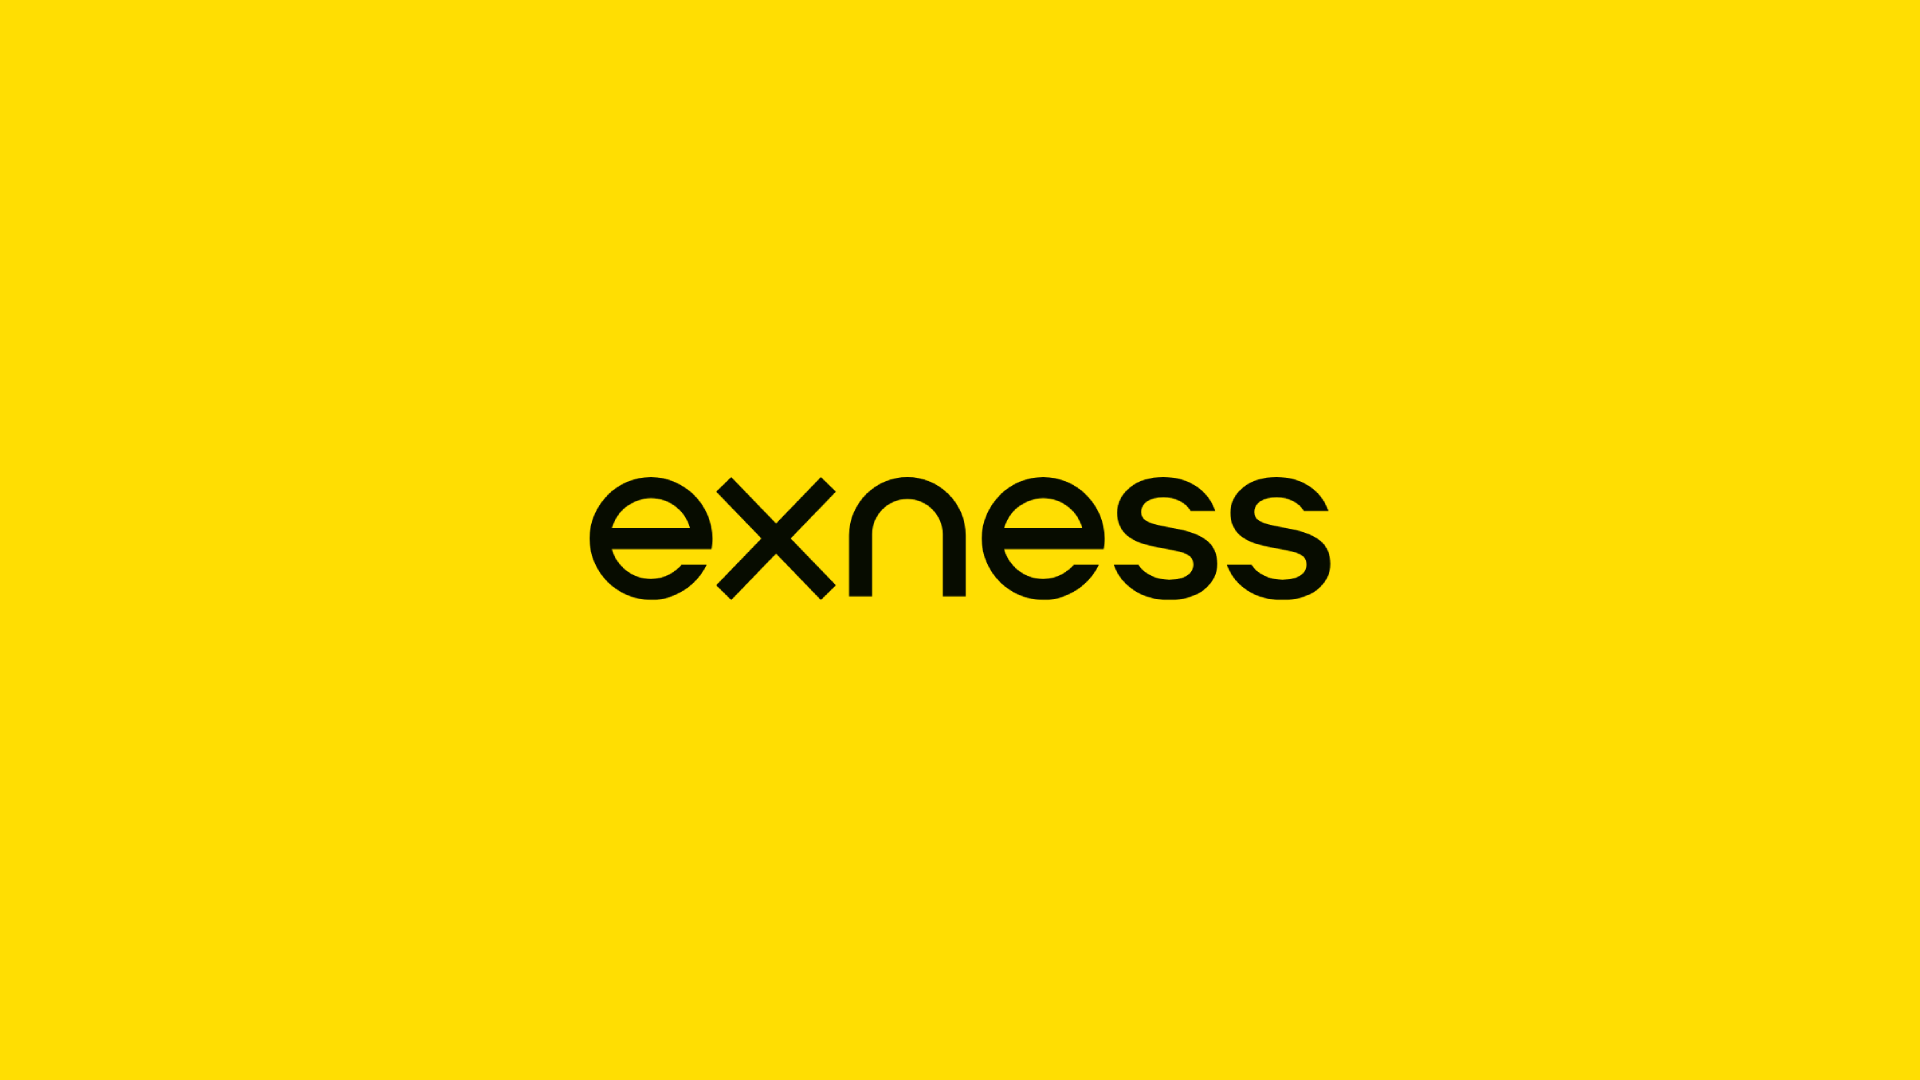 Exness logo.png